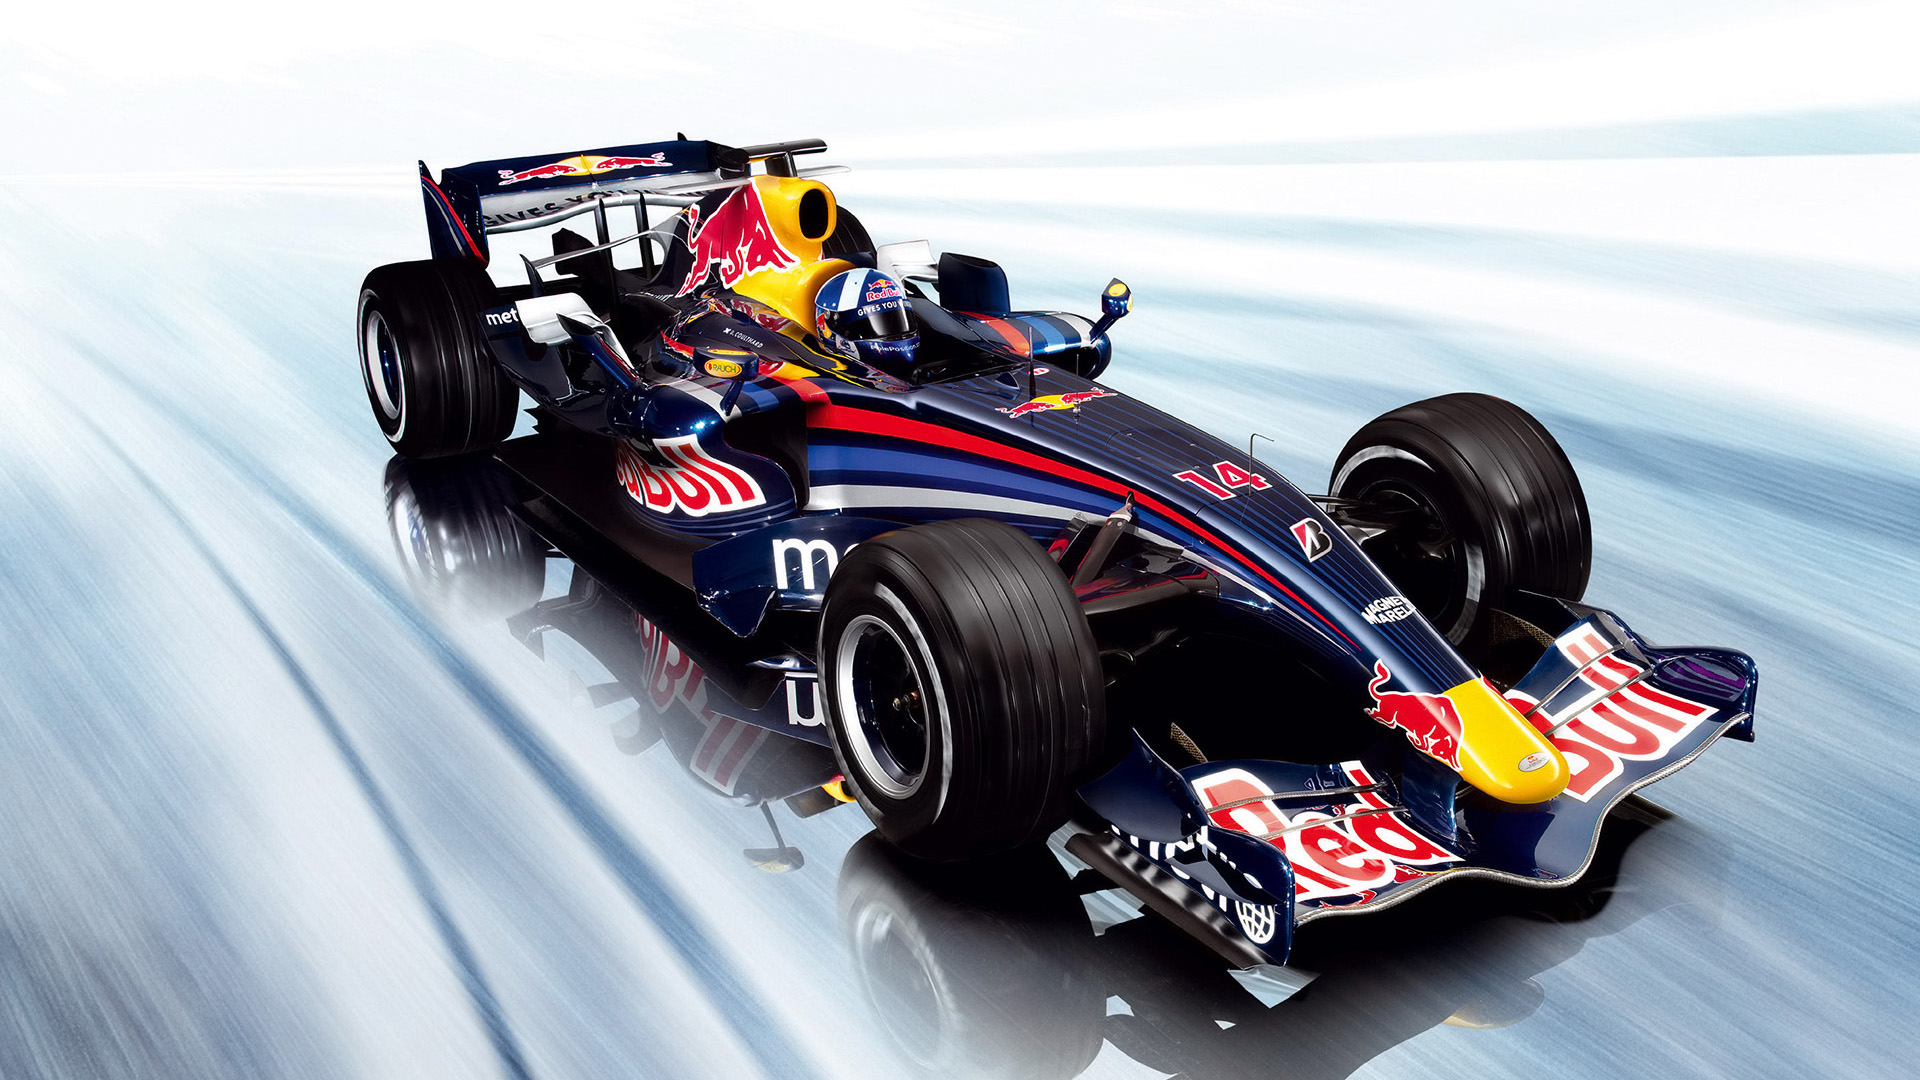  2007 Red Bull Racing RB3 Wallpaper.